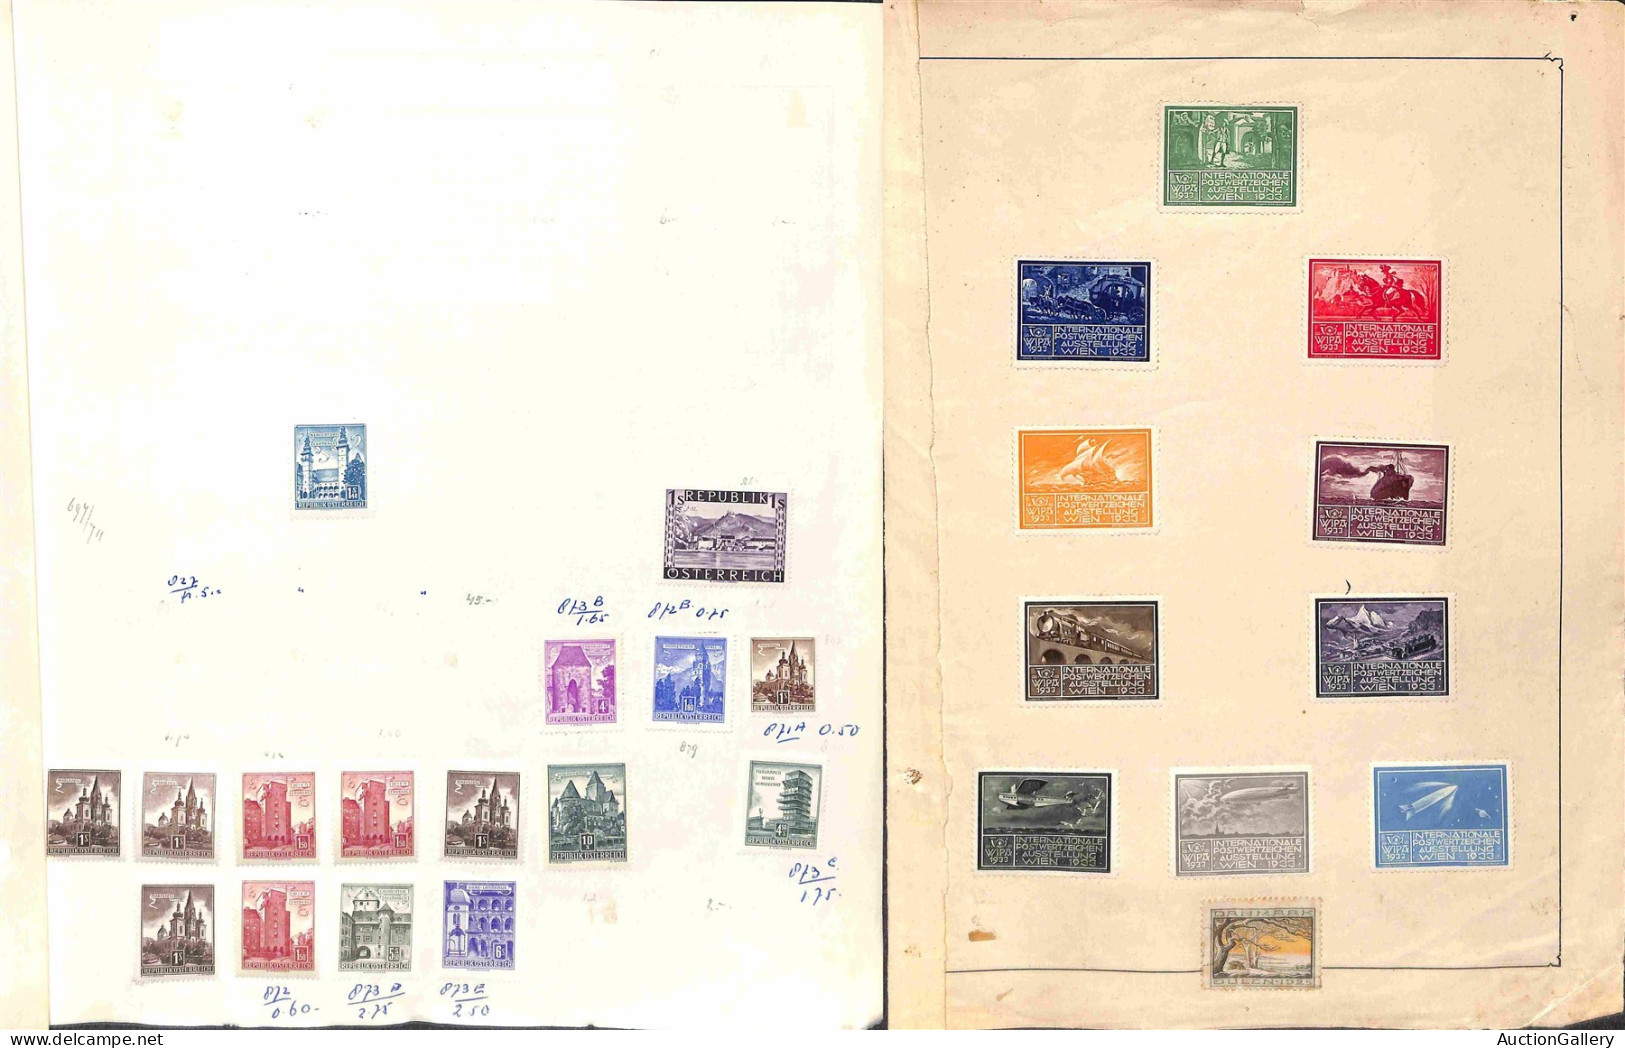 Lotti&Collezioni - AUSTRIA - 1890/1963 - Collezione di valori nuovi e usati del periodo in pagine d'album e fogli artigi